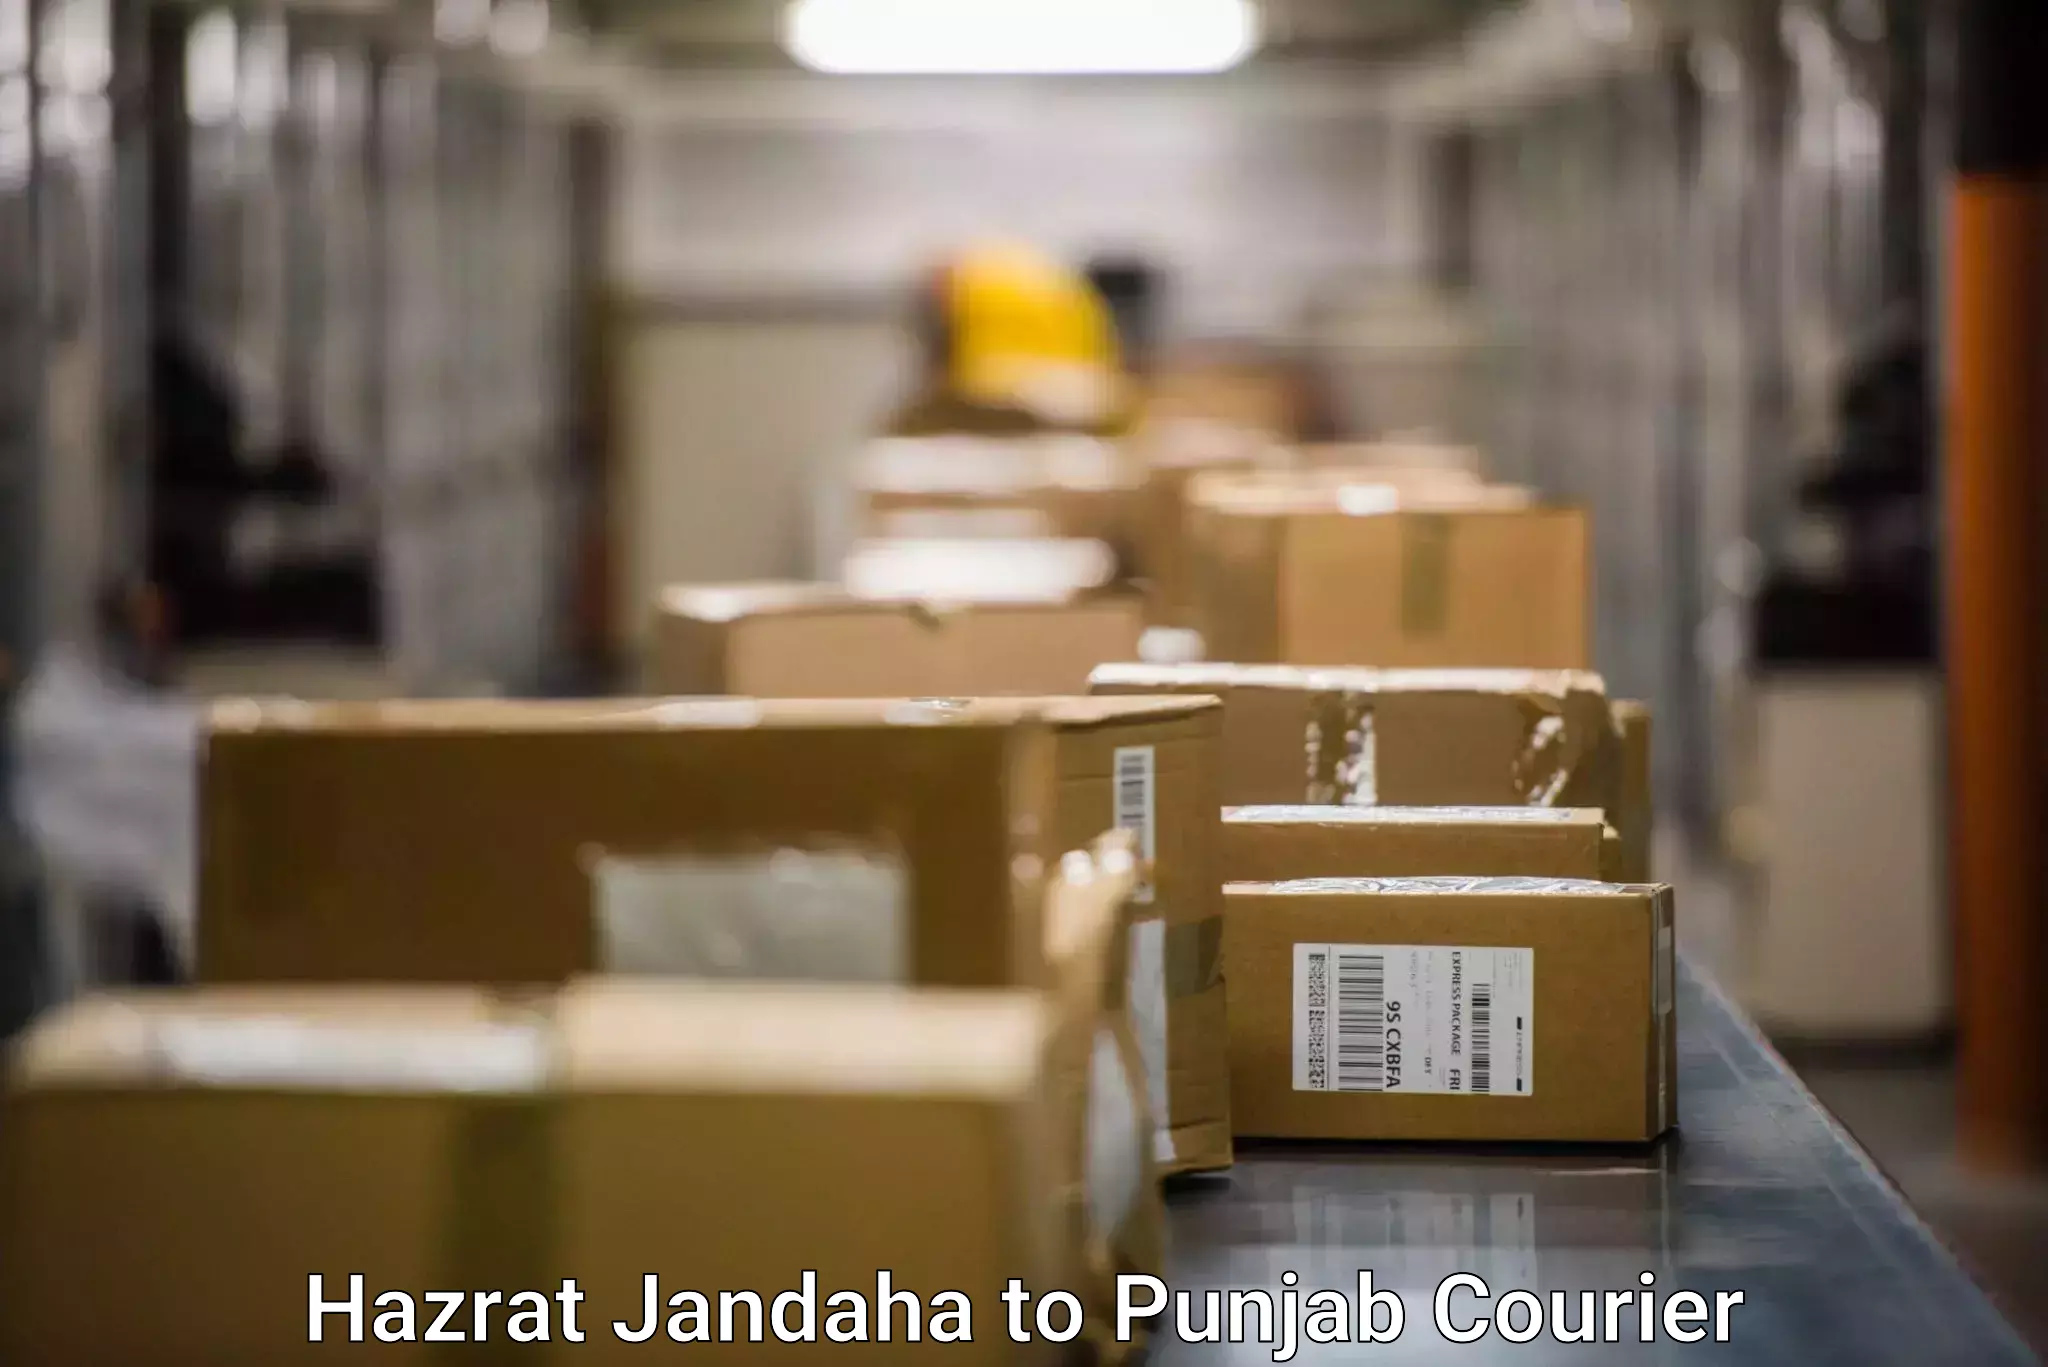 24/7 courier service Hazrat Jandaha to Ajnala